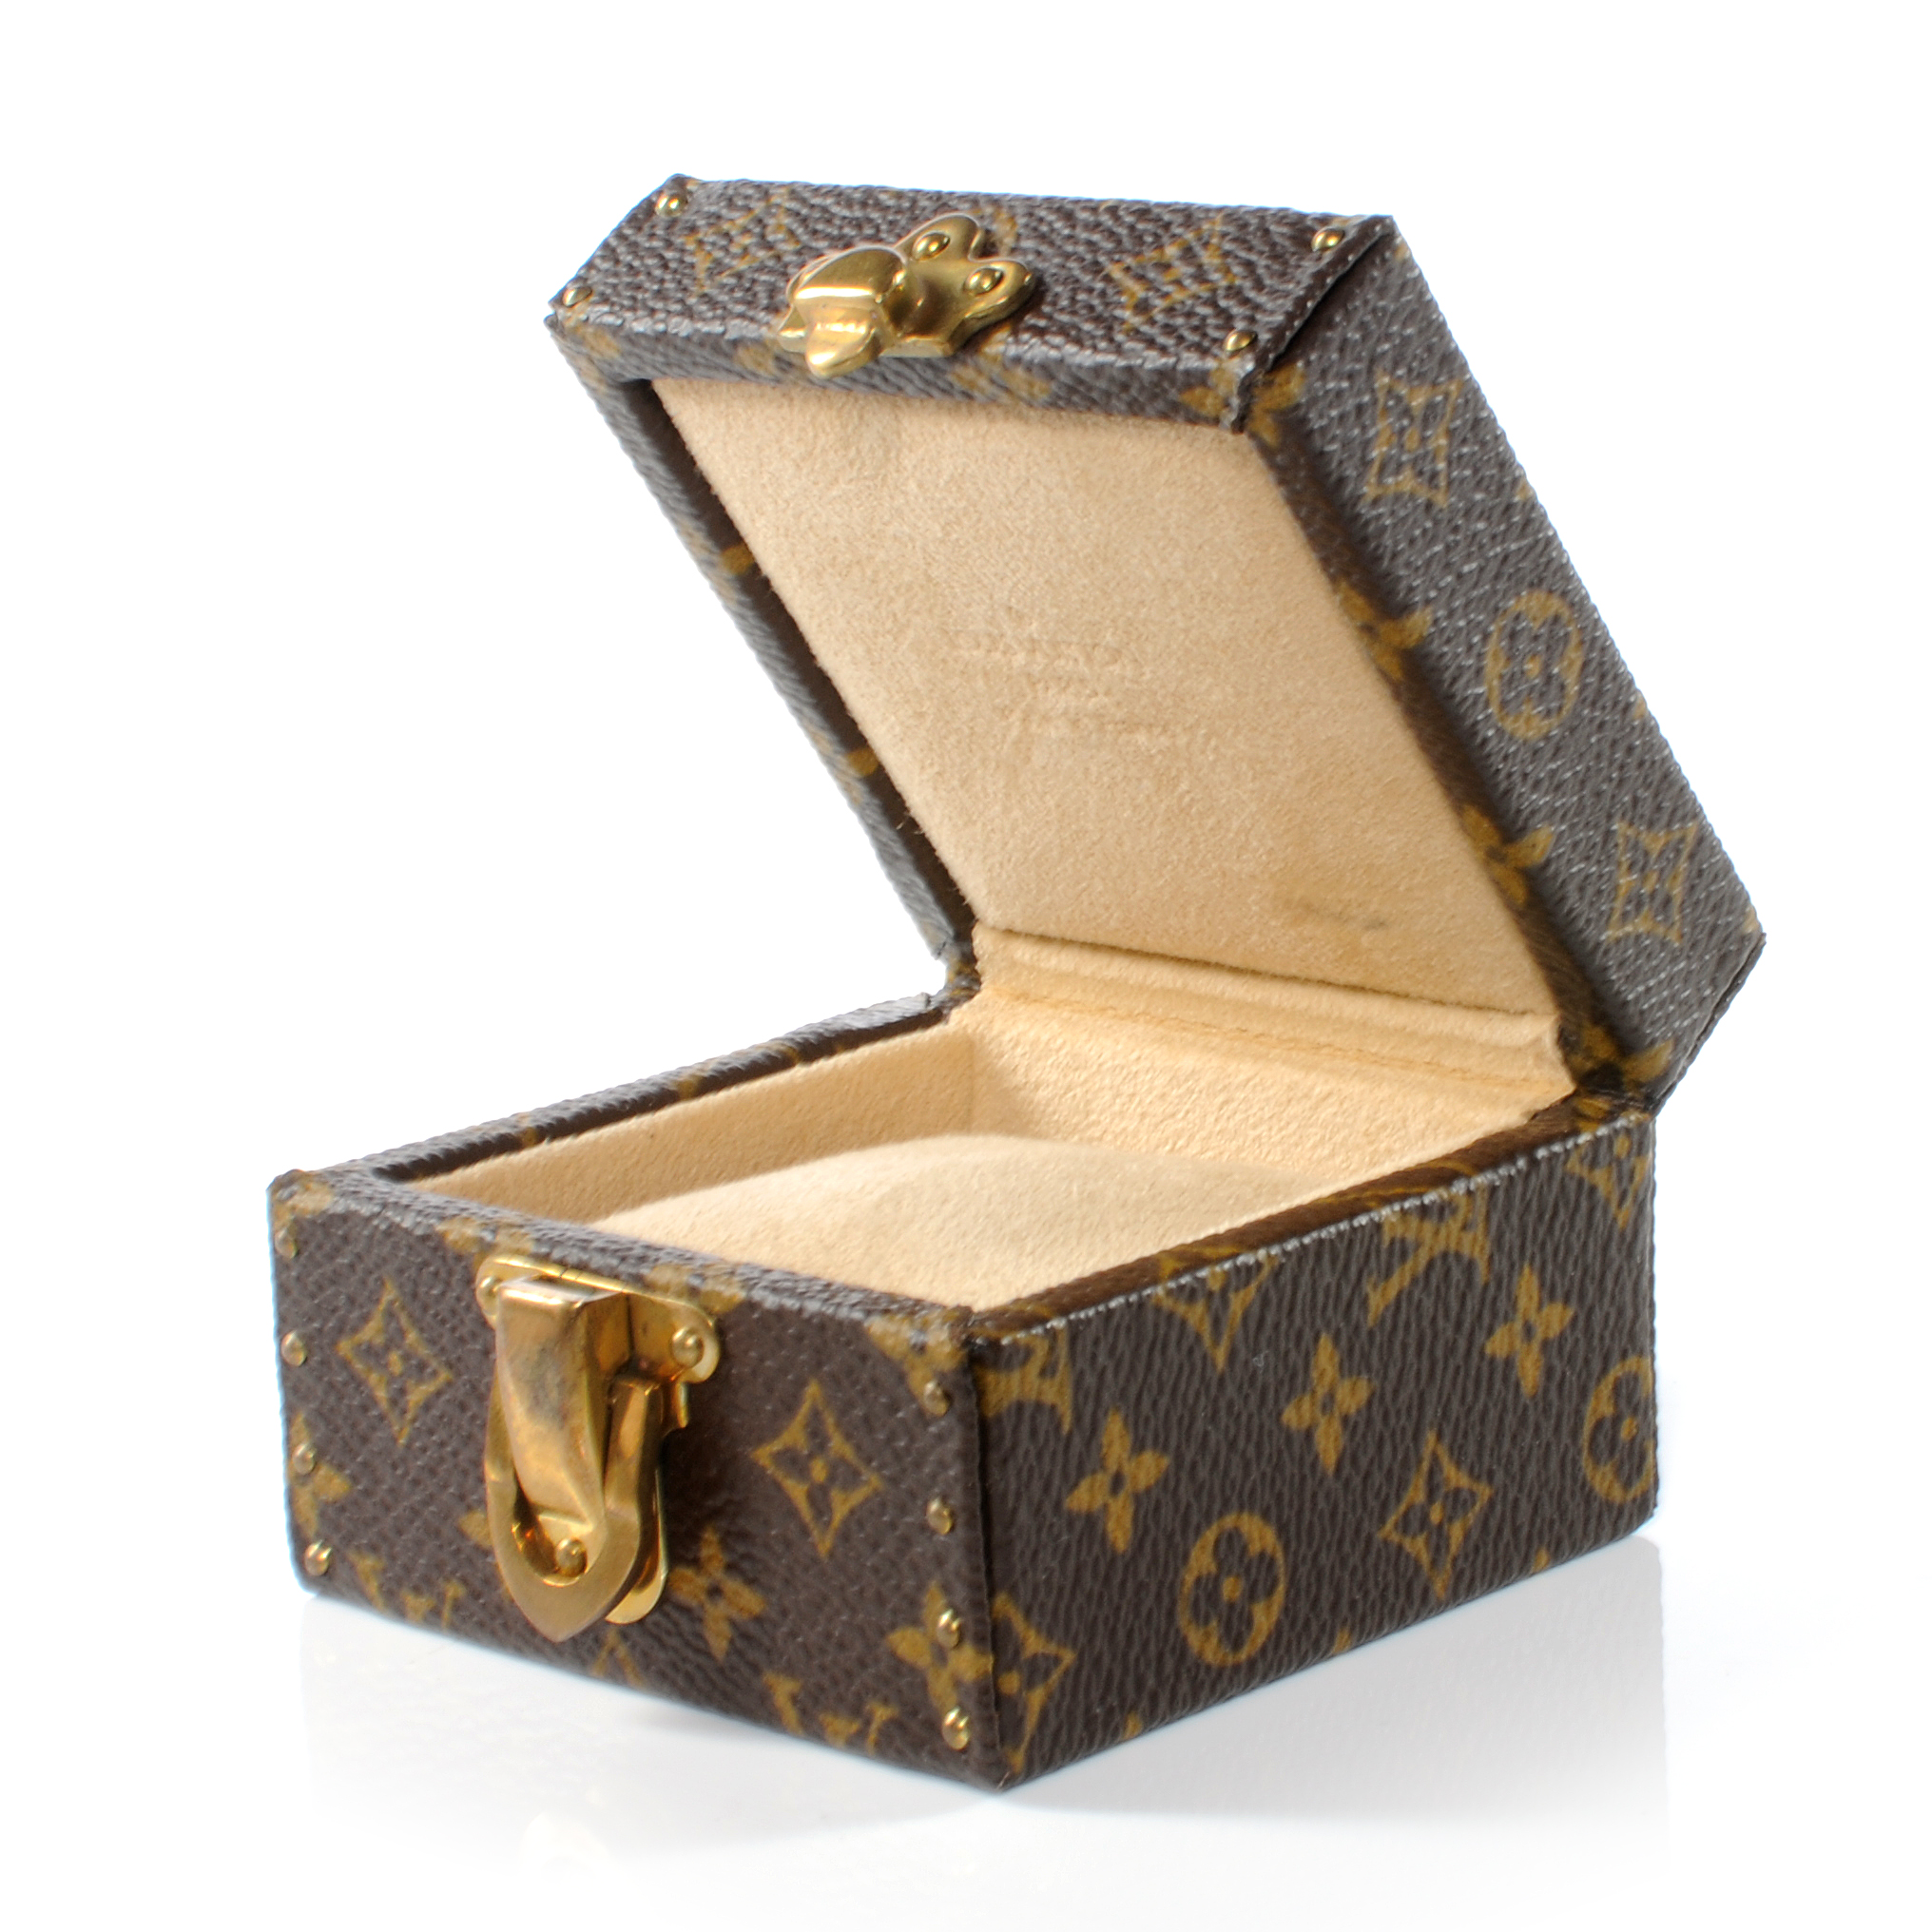 Empty LV Louis Vuitton Shoe Box for Sale in Palos Verdes Estates